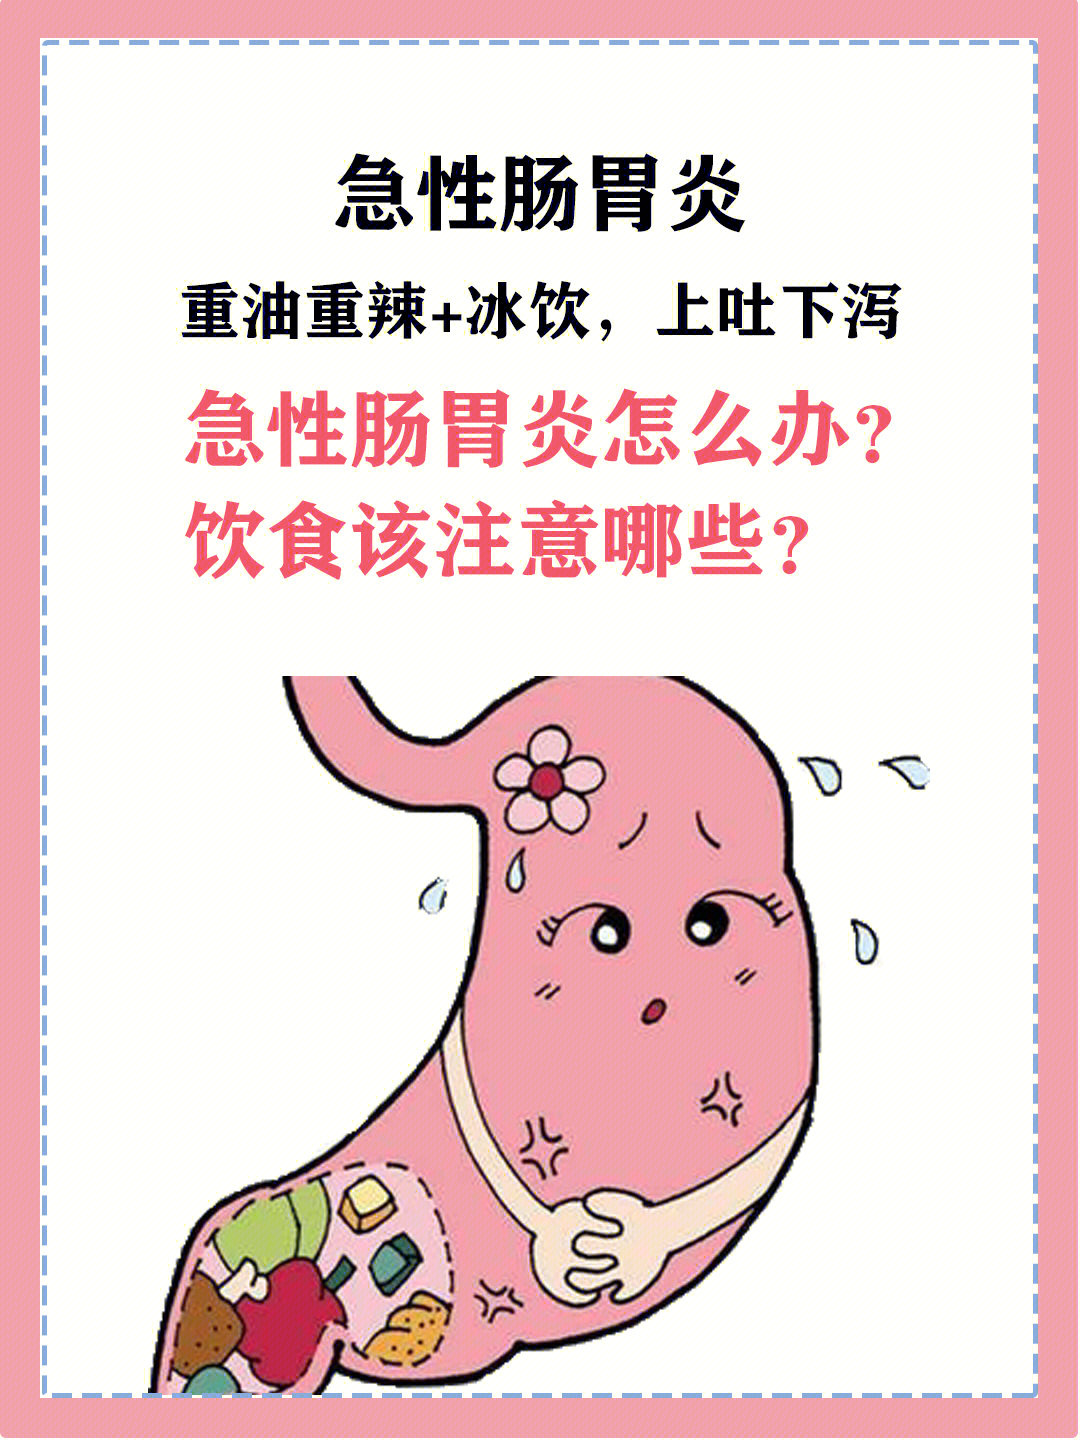 急性肠胃炎的症状图片